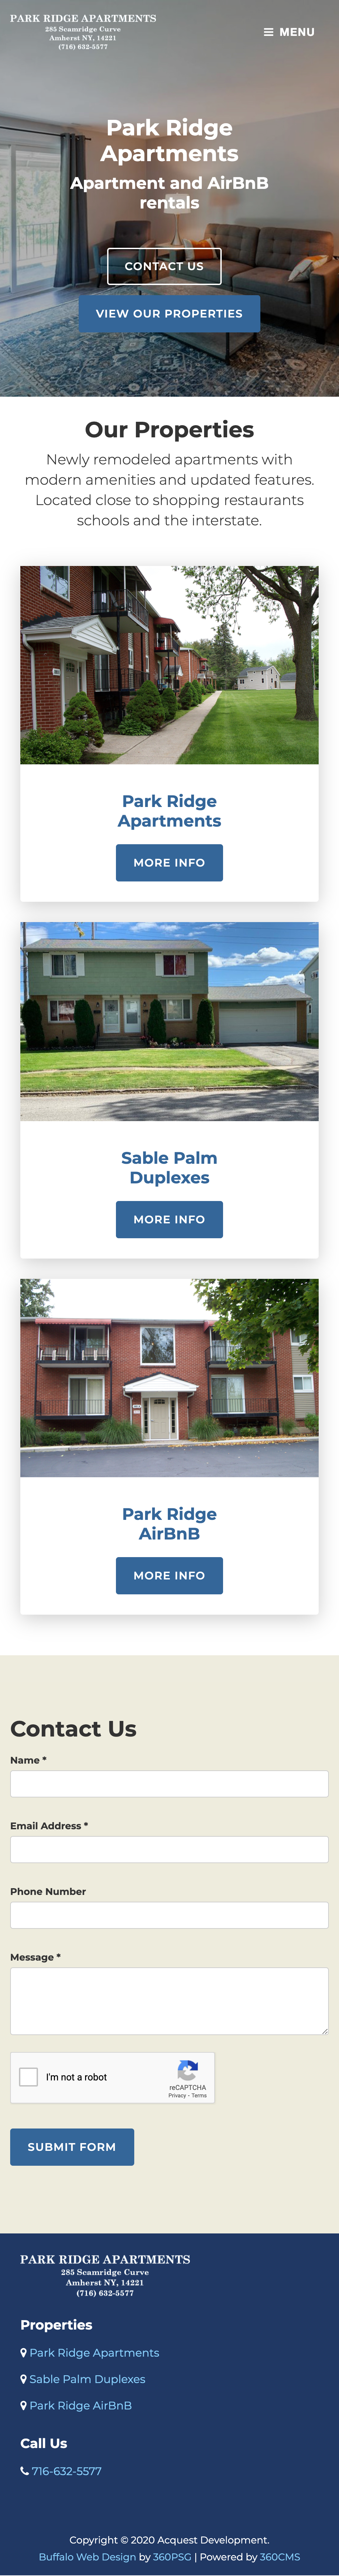 Park Ridge Apartments Website - Mobile